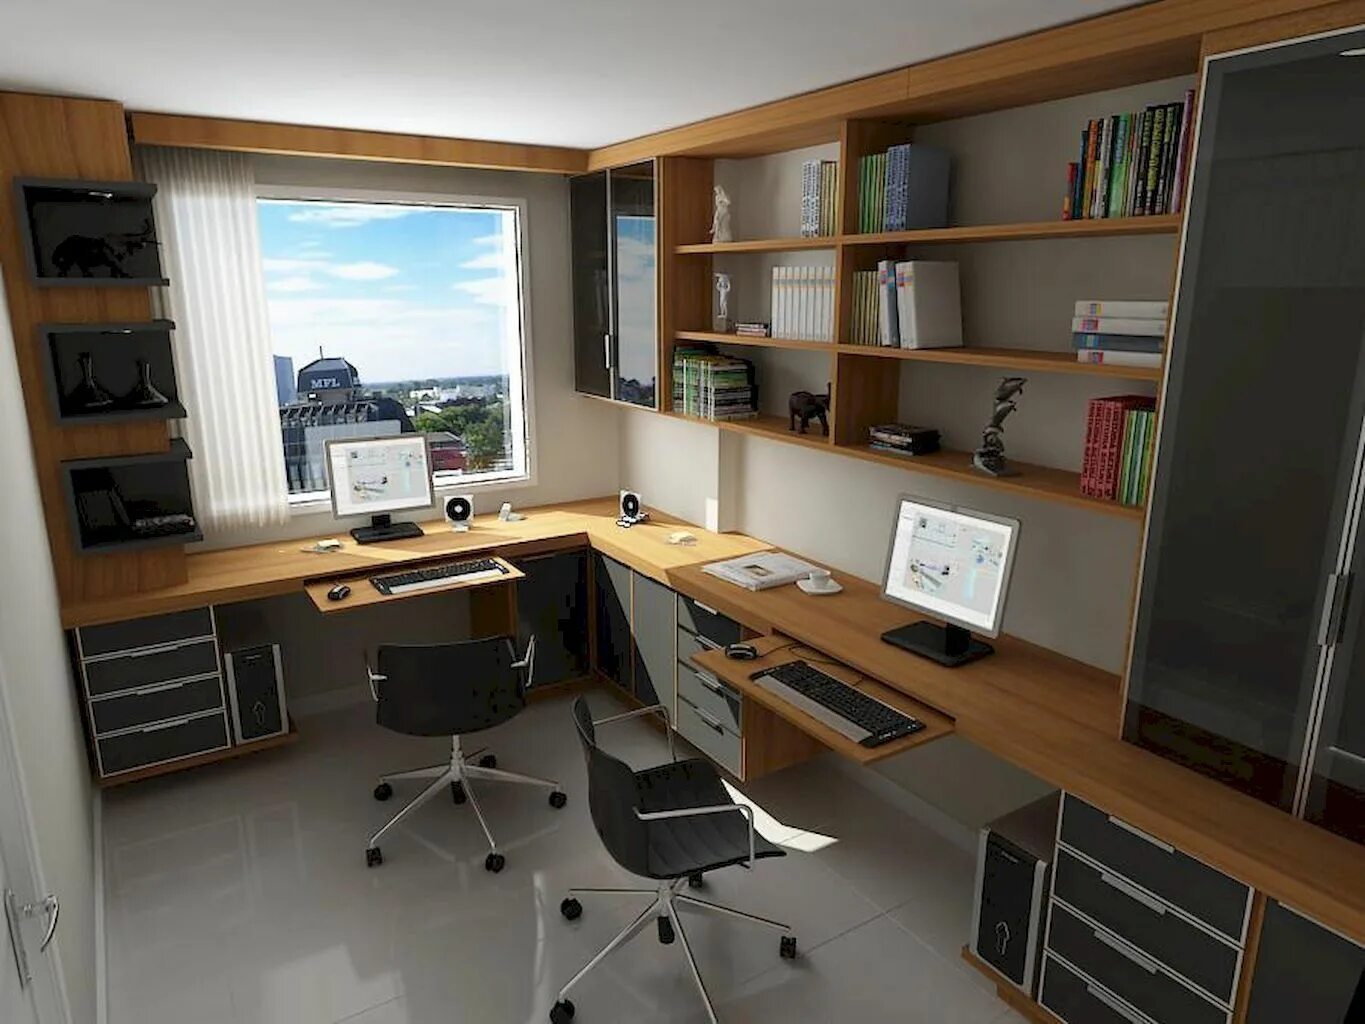 Компьютерный стол у окна. Письменный стол вдоль окна. Большой письменный стол у окна. Домашний офис интерьер.